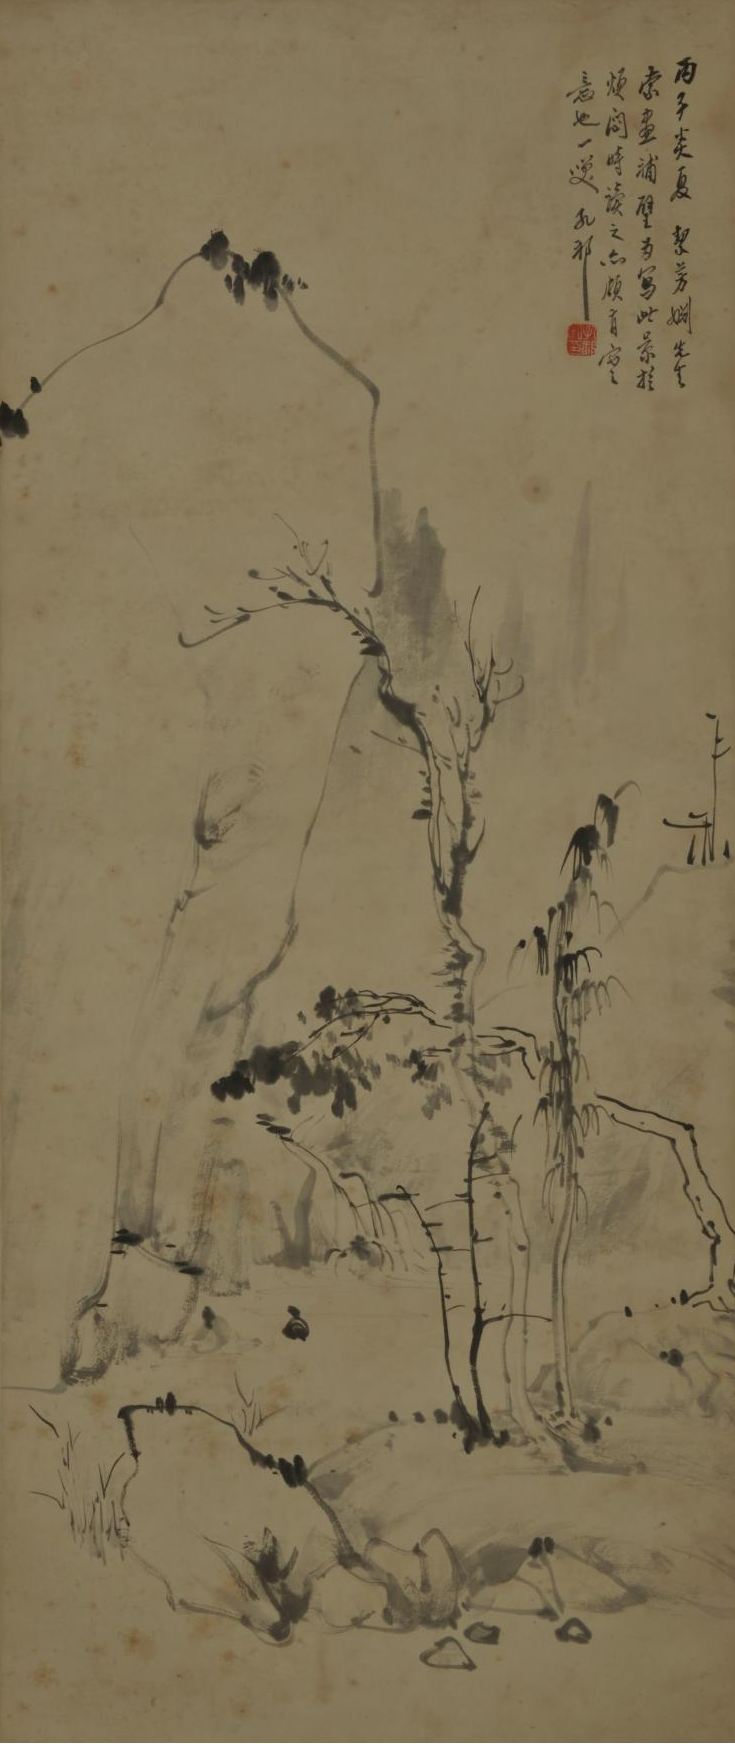  《空谷疏树图》 汪采白   纸本立轴  1936年  安徽博物院藏